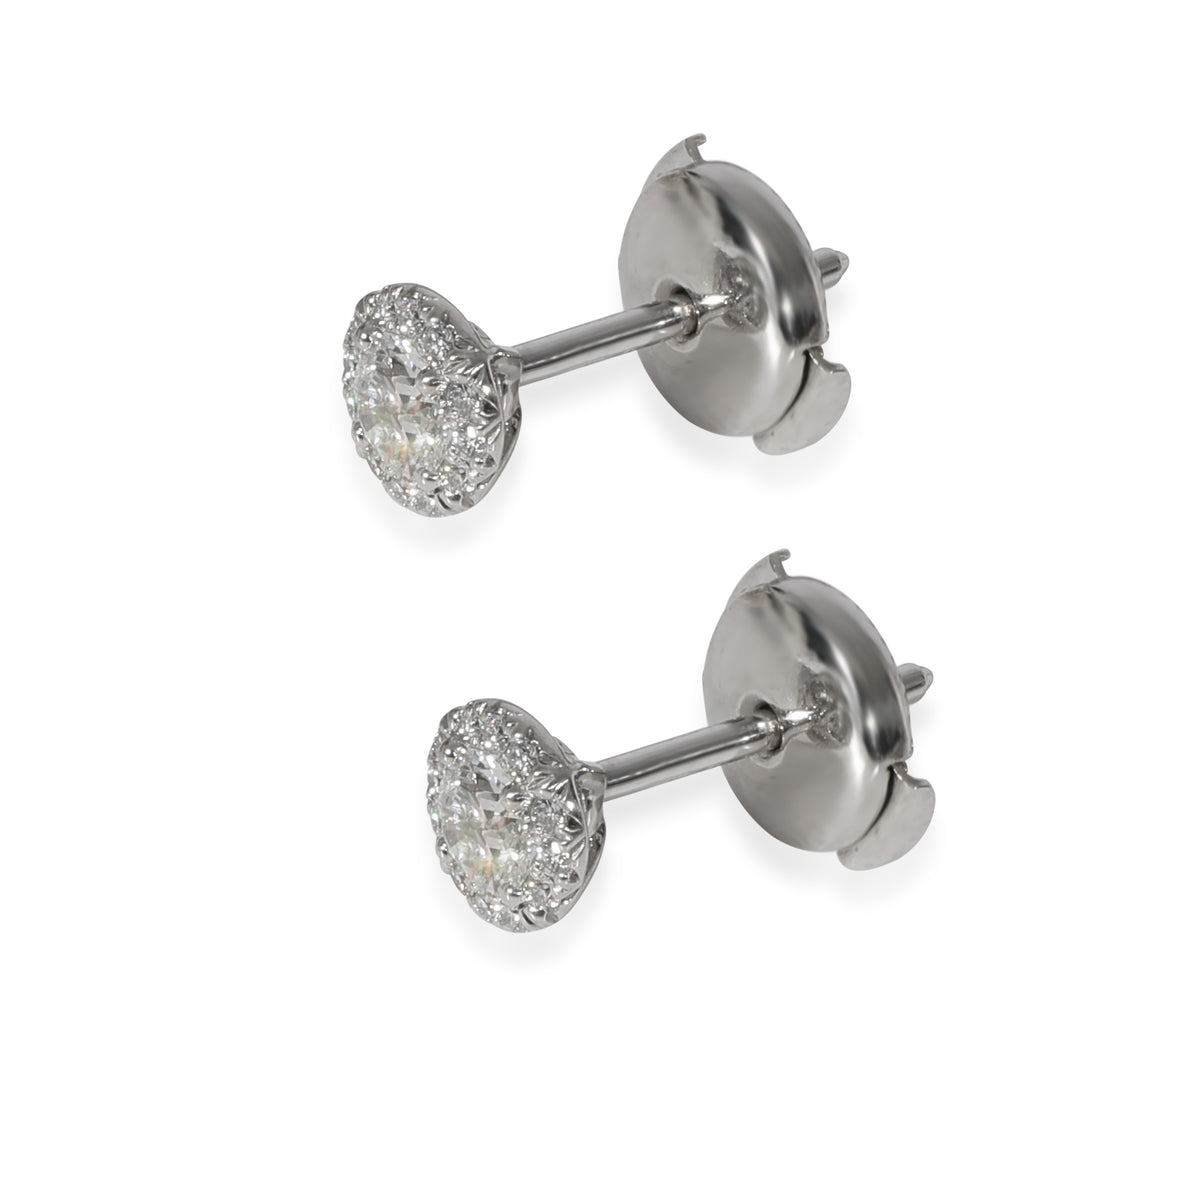 Tiffany & Co. Soleste Diamond Earrings in 950 Platinum DEF VVS 0.44 CTW